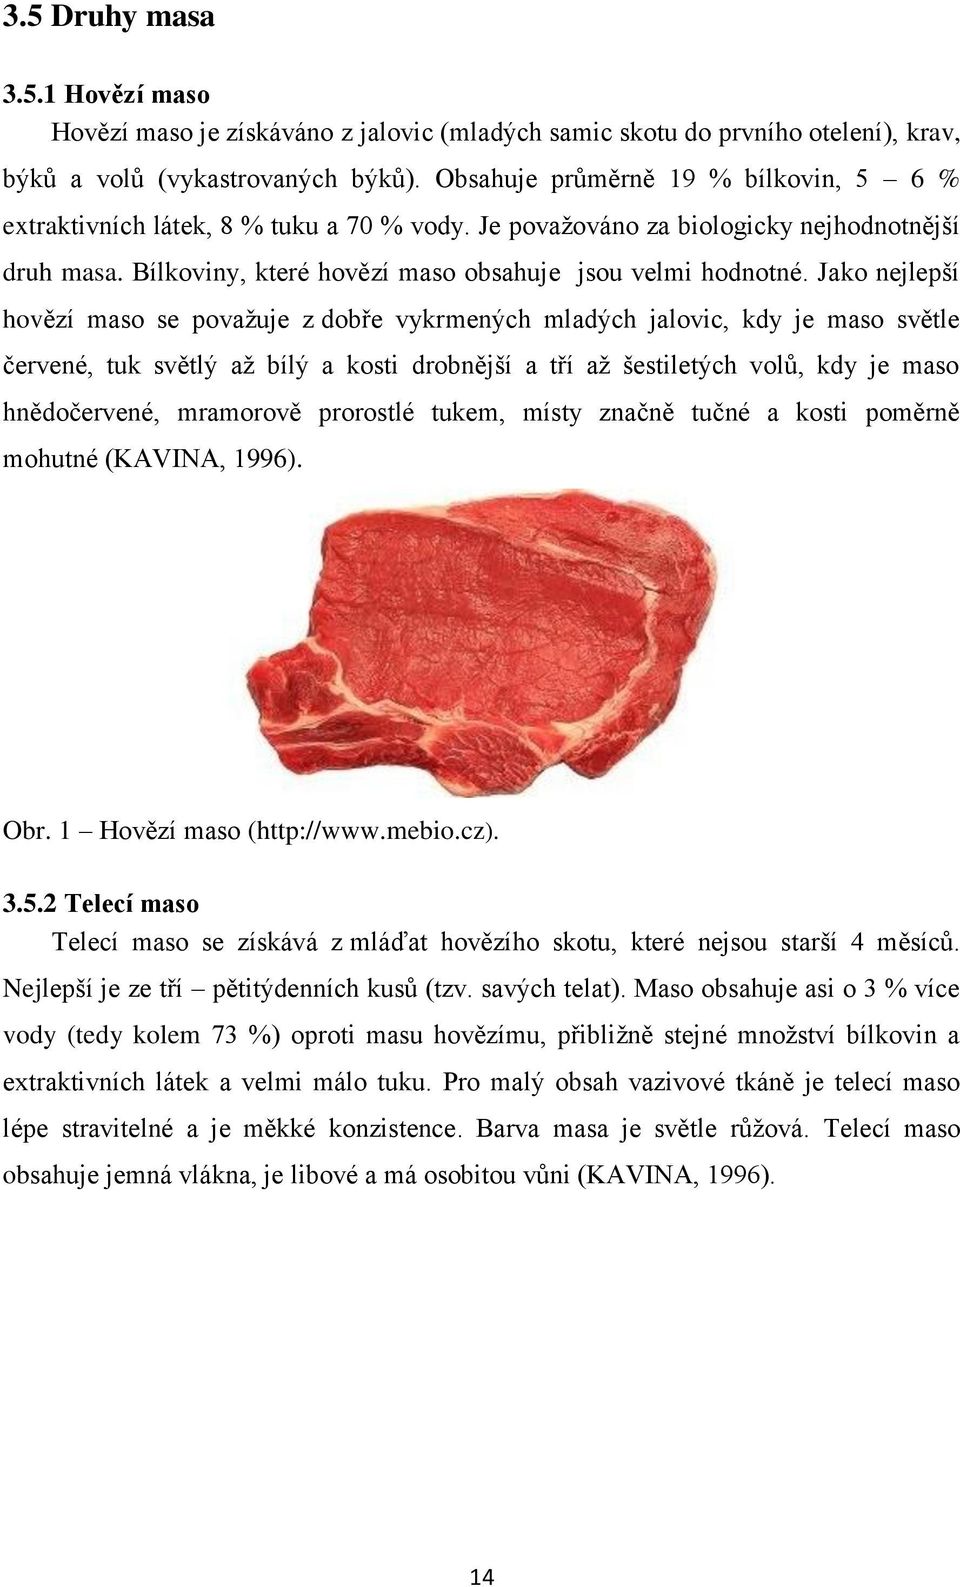 Jako nejlepší hovězí maso se povaţuje z dobře vykrmených mladých jalovic, kdy je maso světle červené, tuk světlý aţ bílý a kosti drobnější a tří aţ šestiletých volů, kdy je maso hnědočervené,